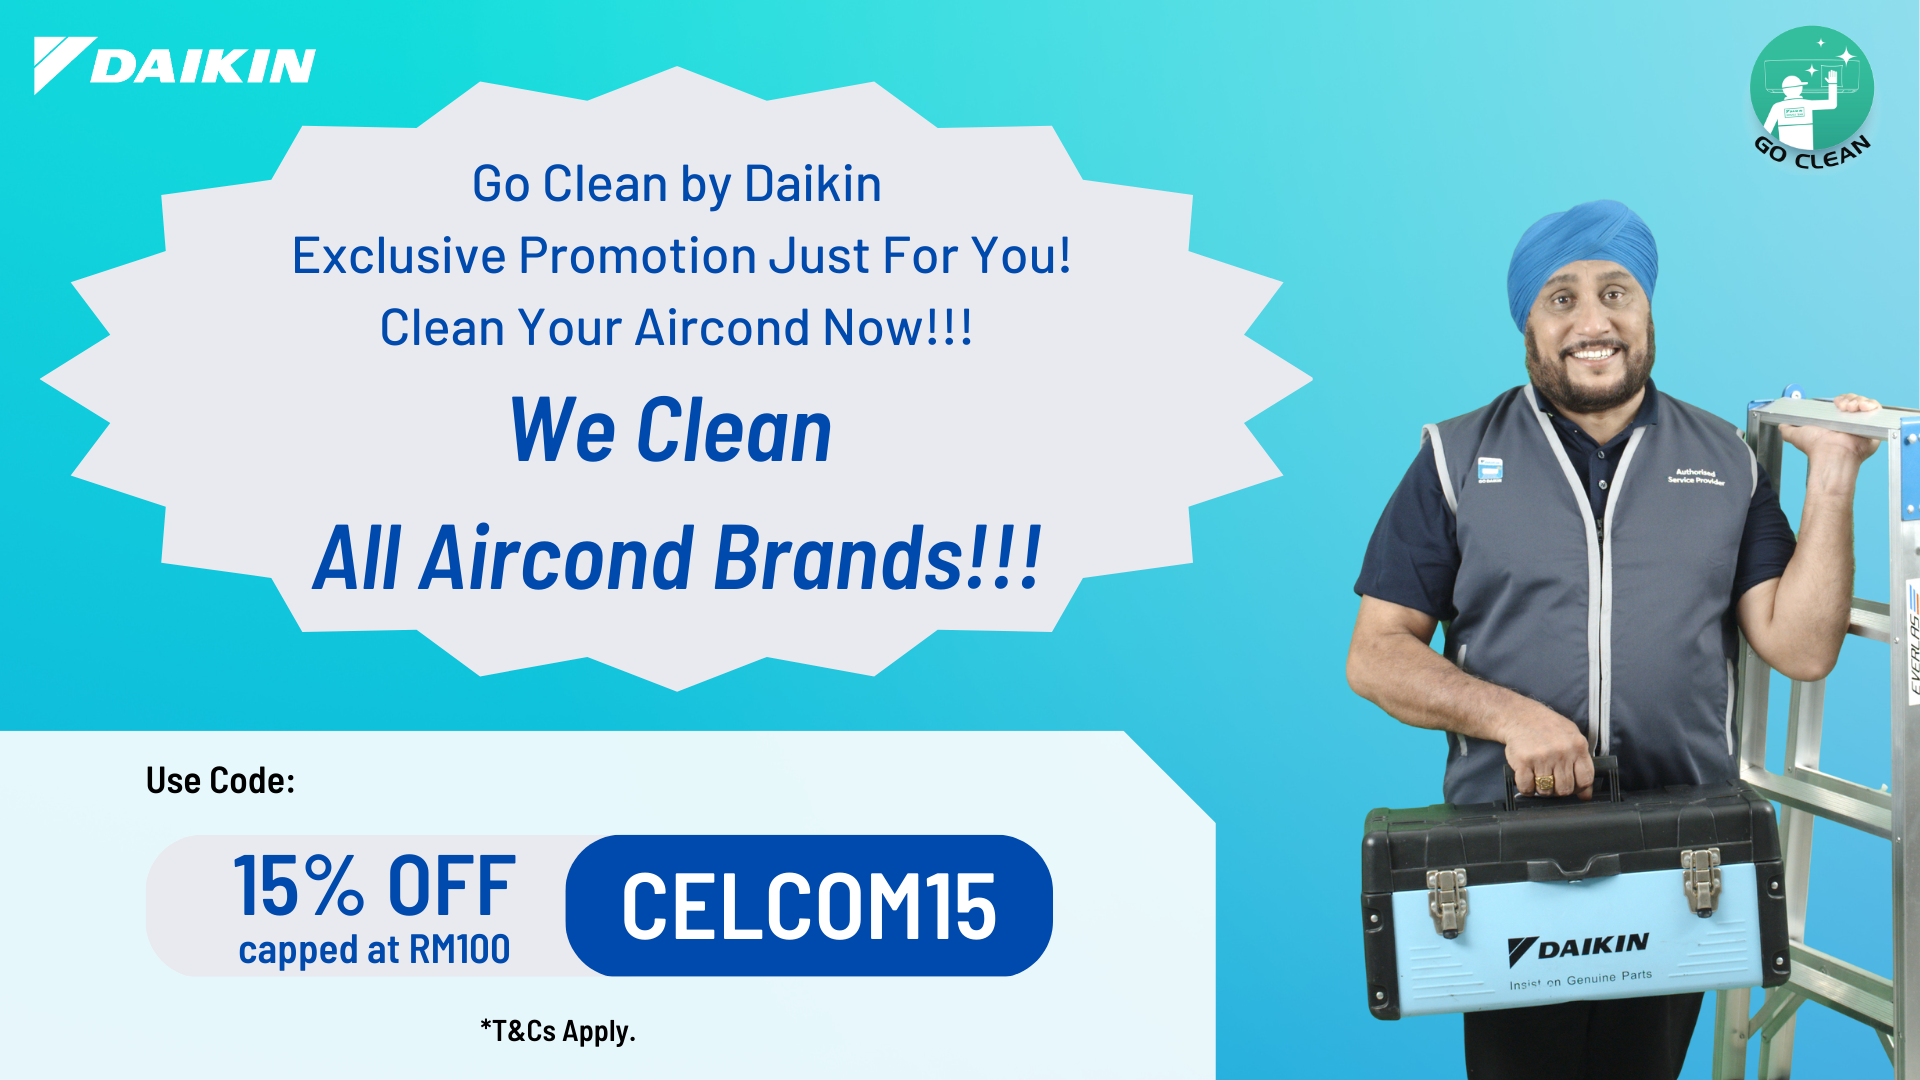 DAIKIN GO CLEAN X CELCOM | Daikin Malaysia